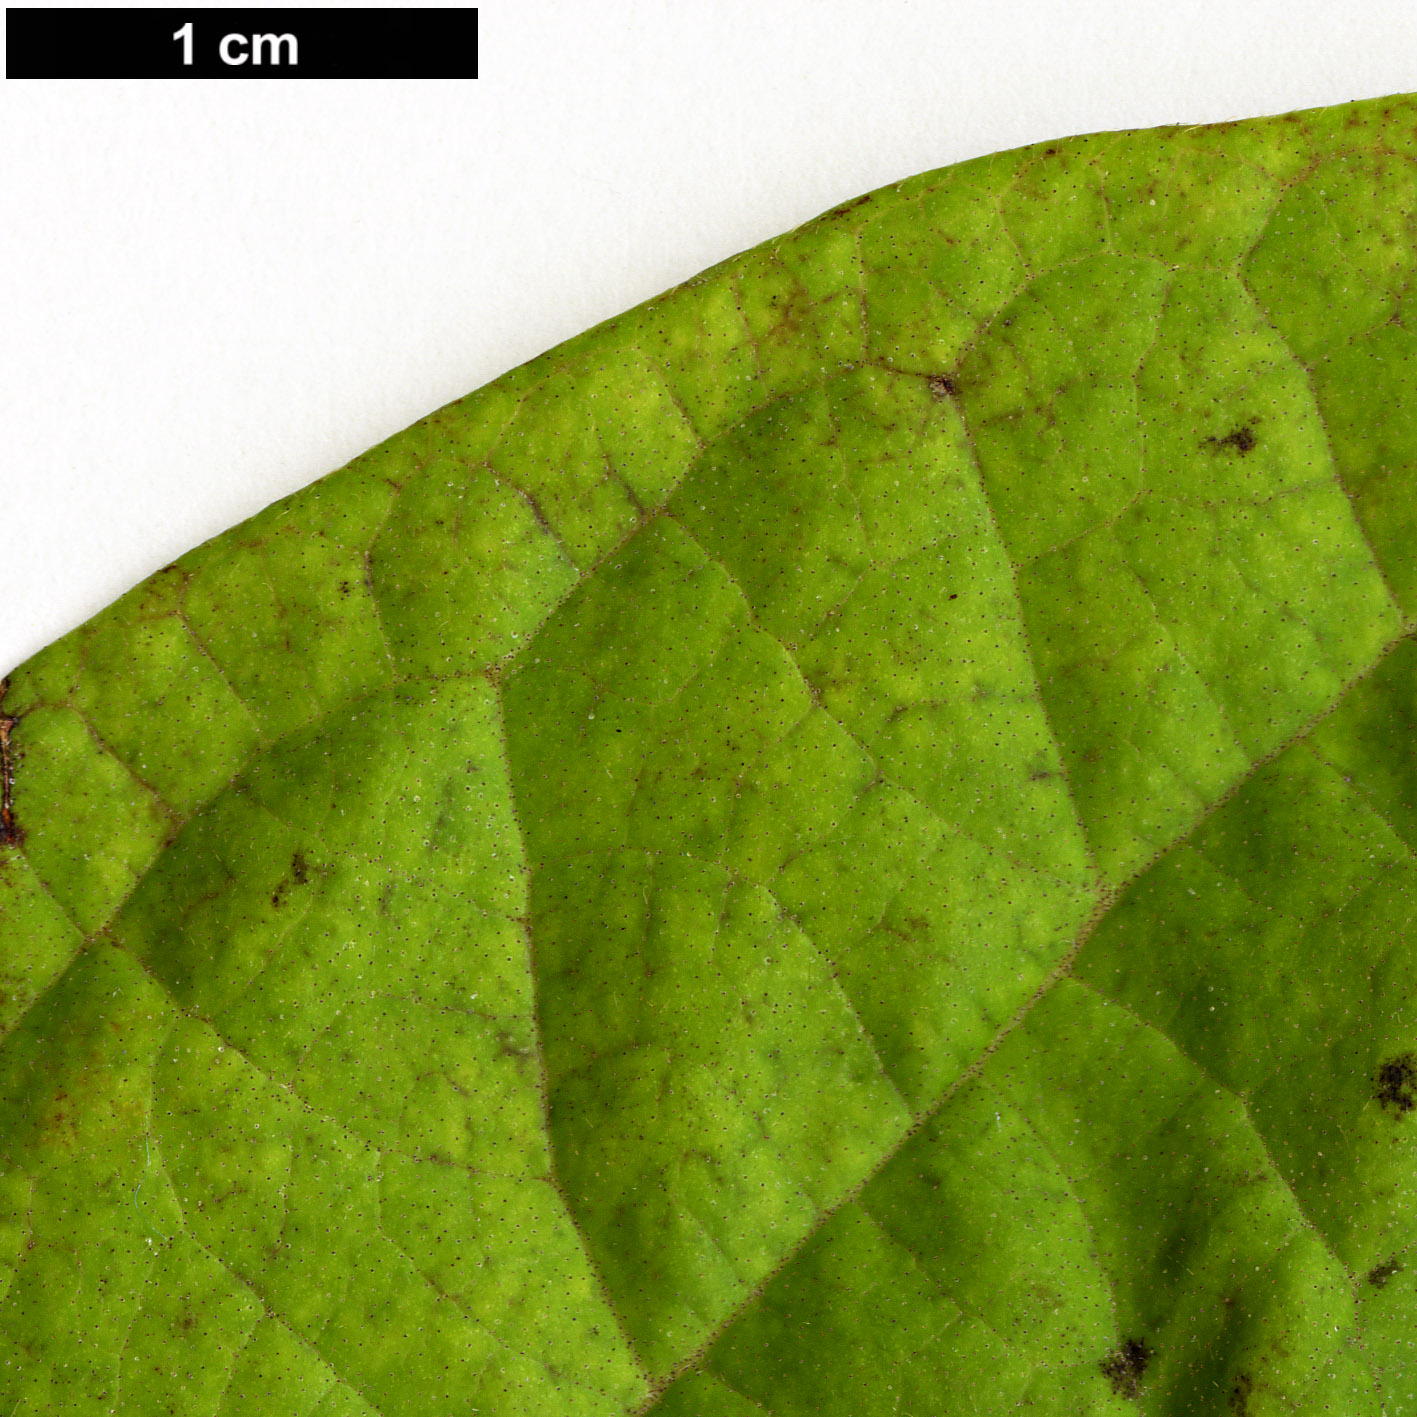 High resolution image: Family: Adoxaceae - Genus: Viburnum - Taxon: sambucinum